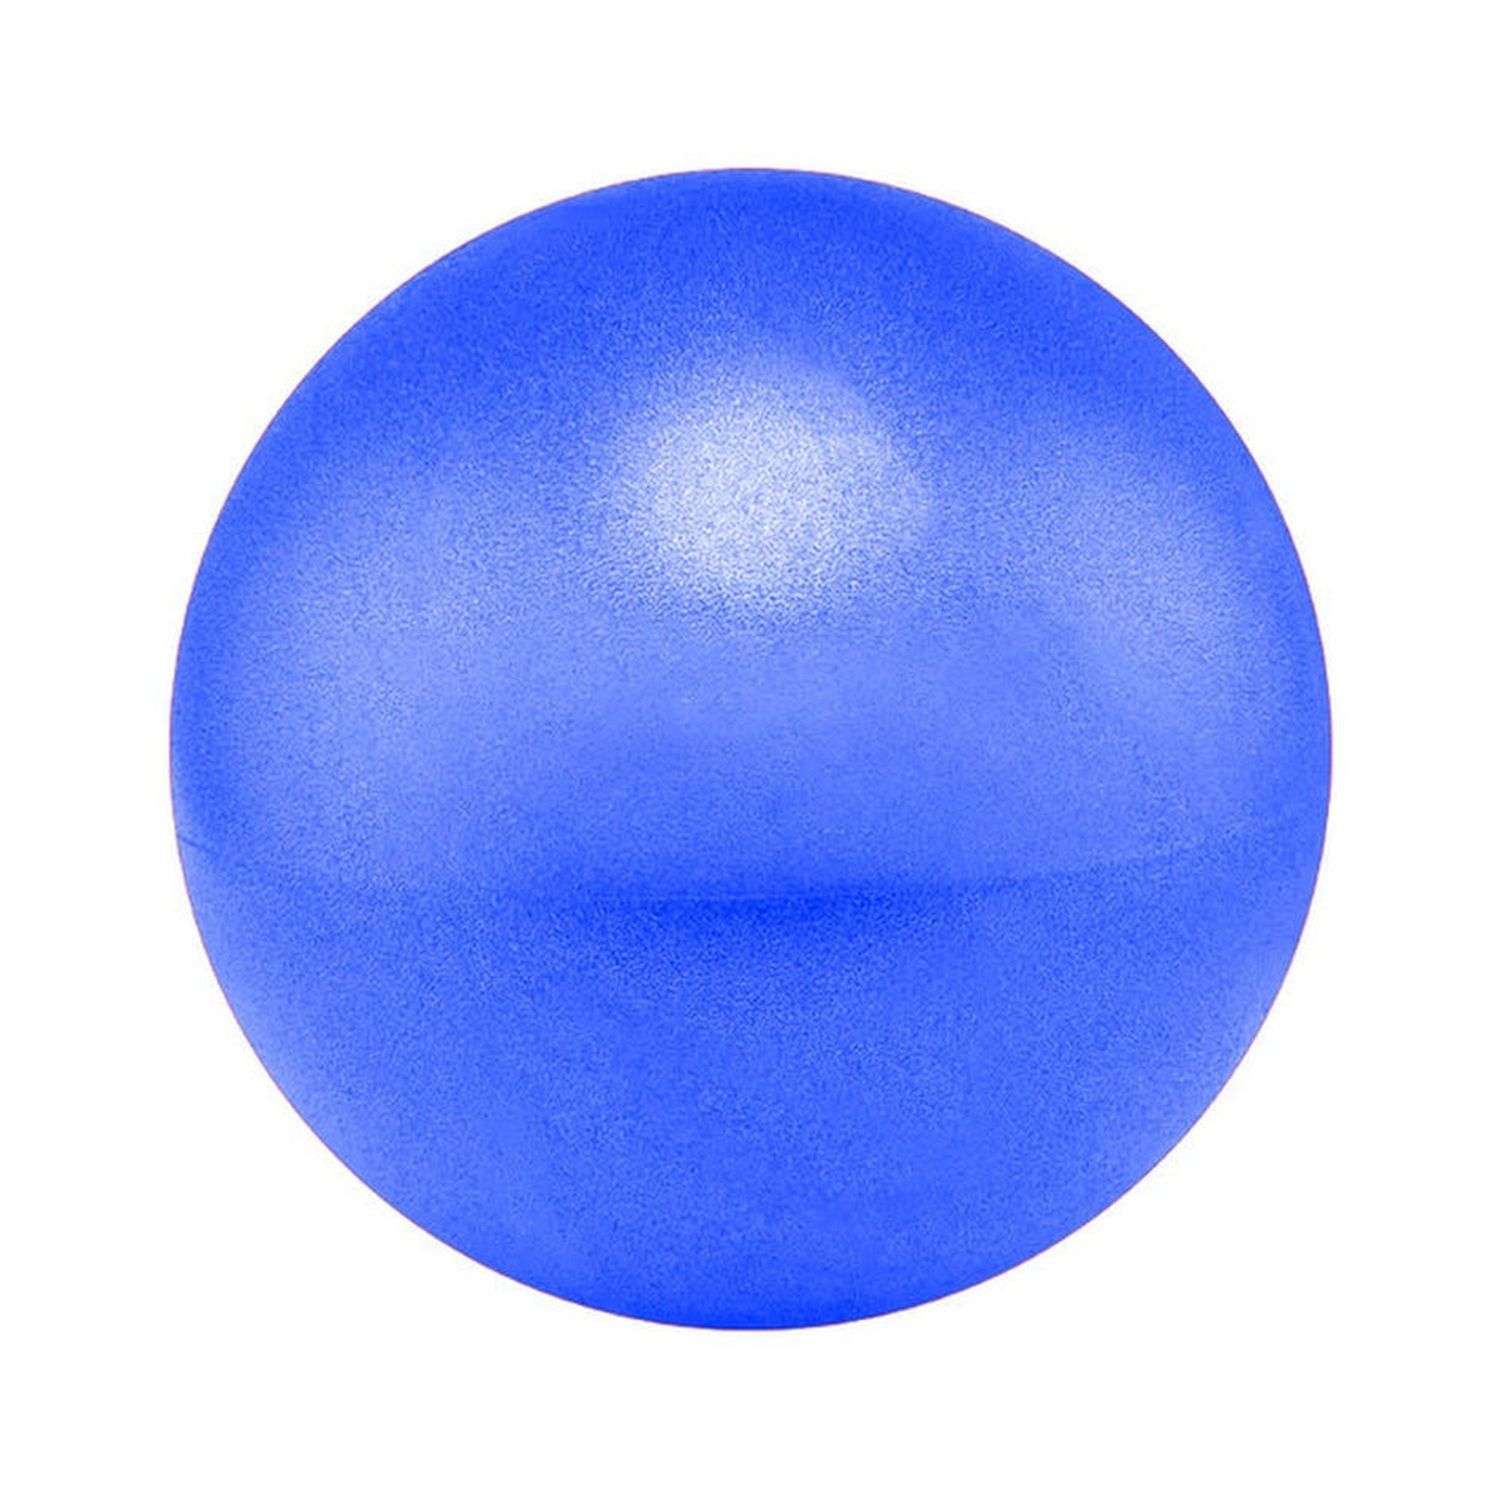 Мяч для йоги и пилатеса Beroma с антивзрывным эффектом 25 см синий - фото 1